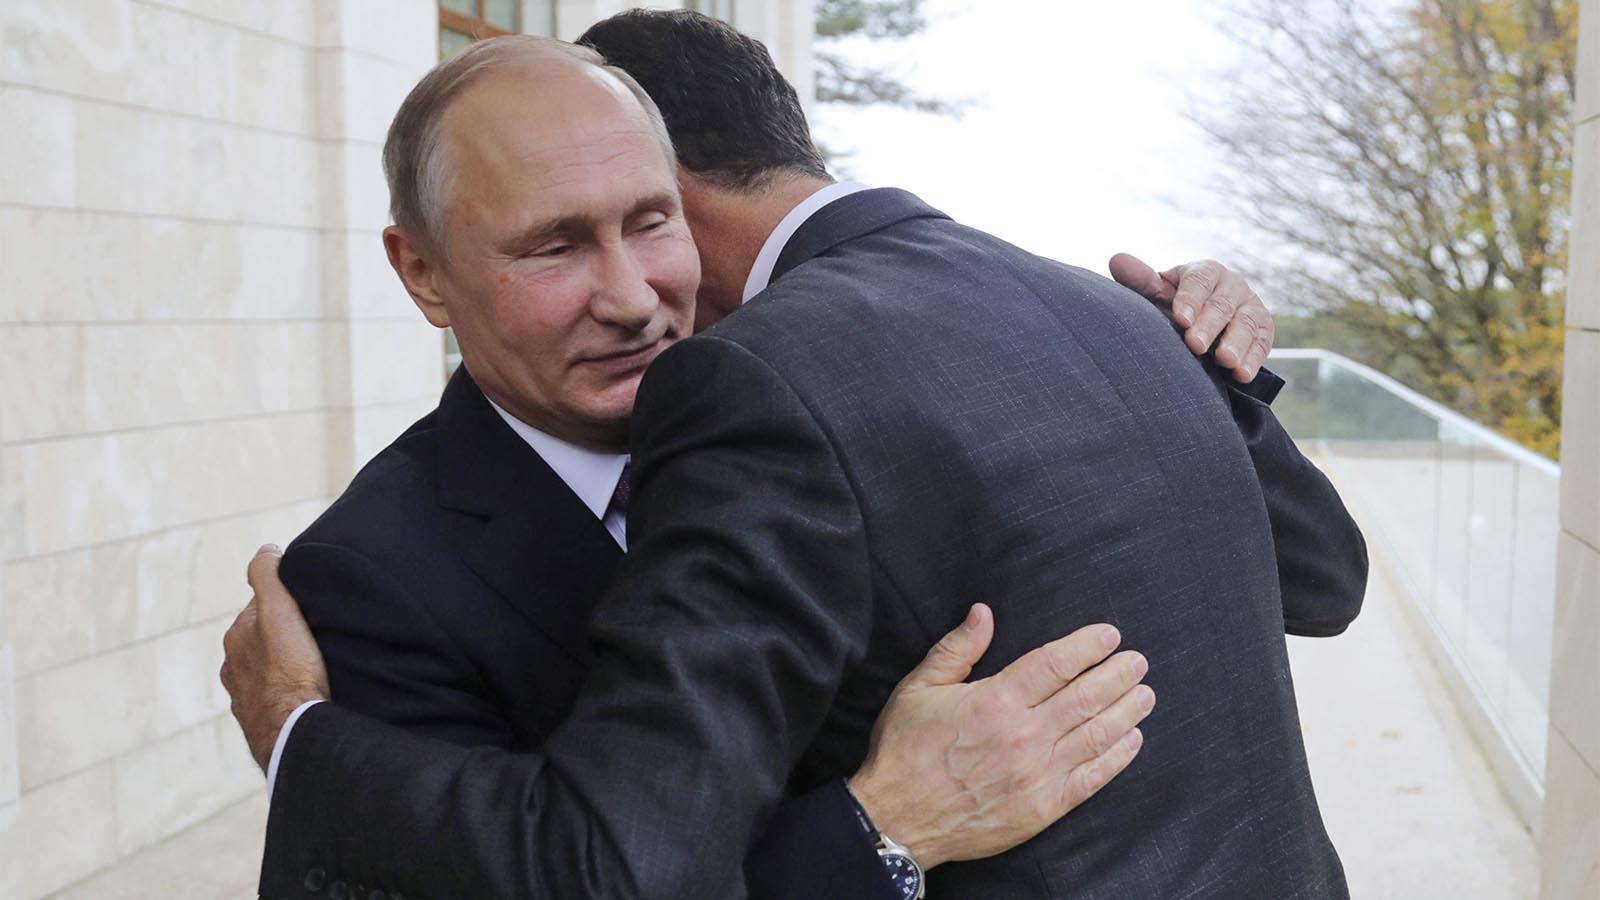 נשיא רוסיה ולדימר פוטין מחבק את נשיא סוריה אסד בפגישה ביניהם בסוצ'י, רוסיה, ב-20 בנובמבר 2017 (צילום: Mikhail Klimentyev, Kremlin Pool Photo via AP)